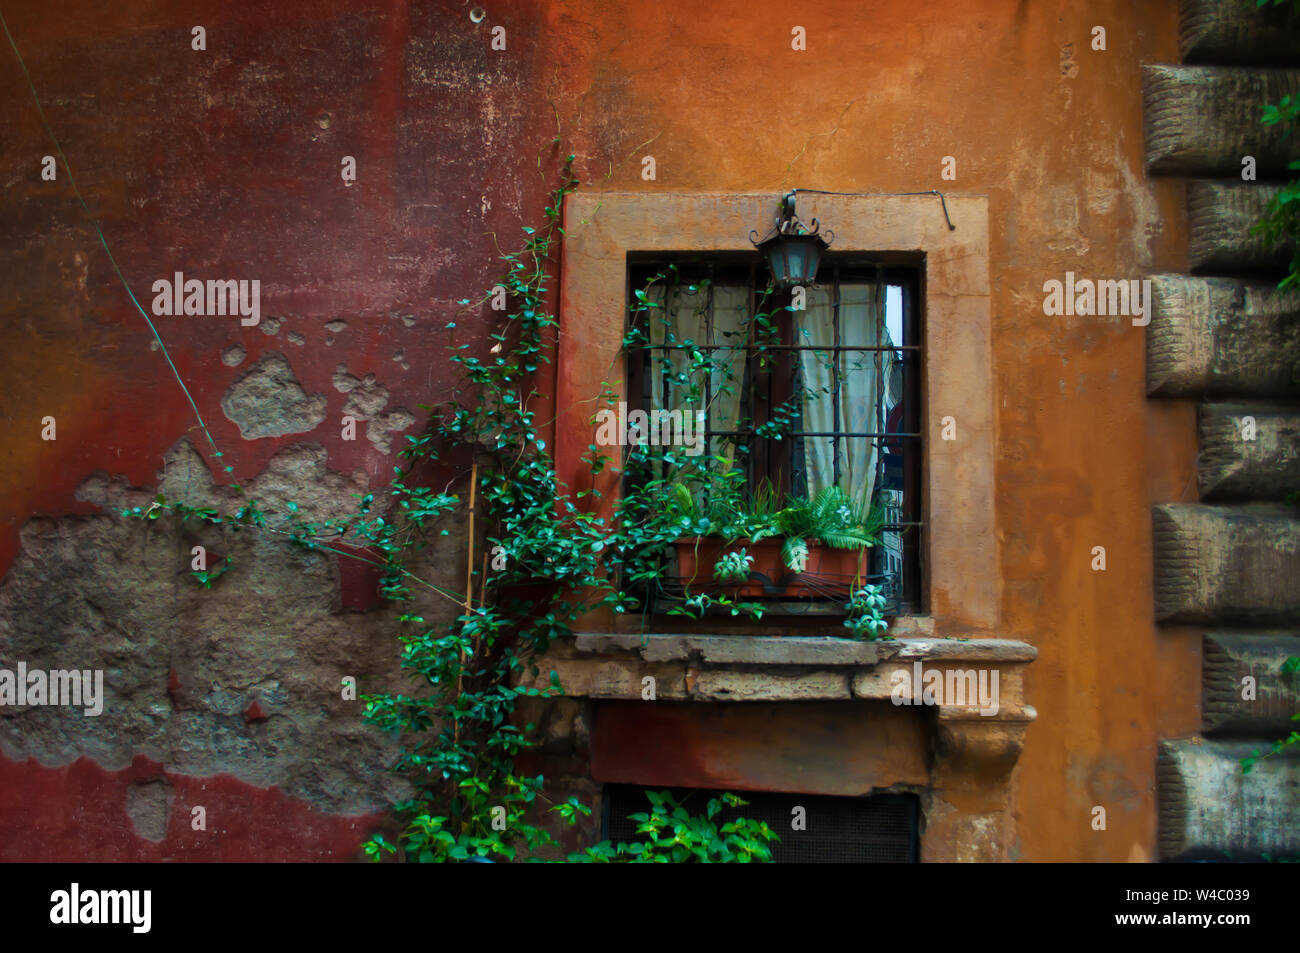 Uno vintage lanterna di ferro su una finestra su un arancione e parete rossa. Piante verdi in un vaso di fiori su un davanzale intrecciano con piante verdi in città ce Foto Stock